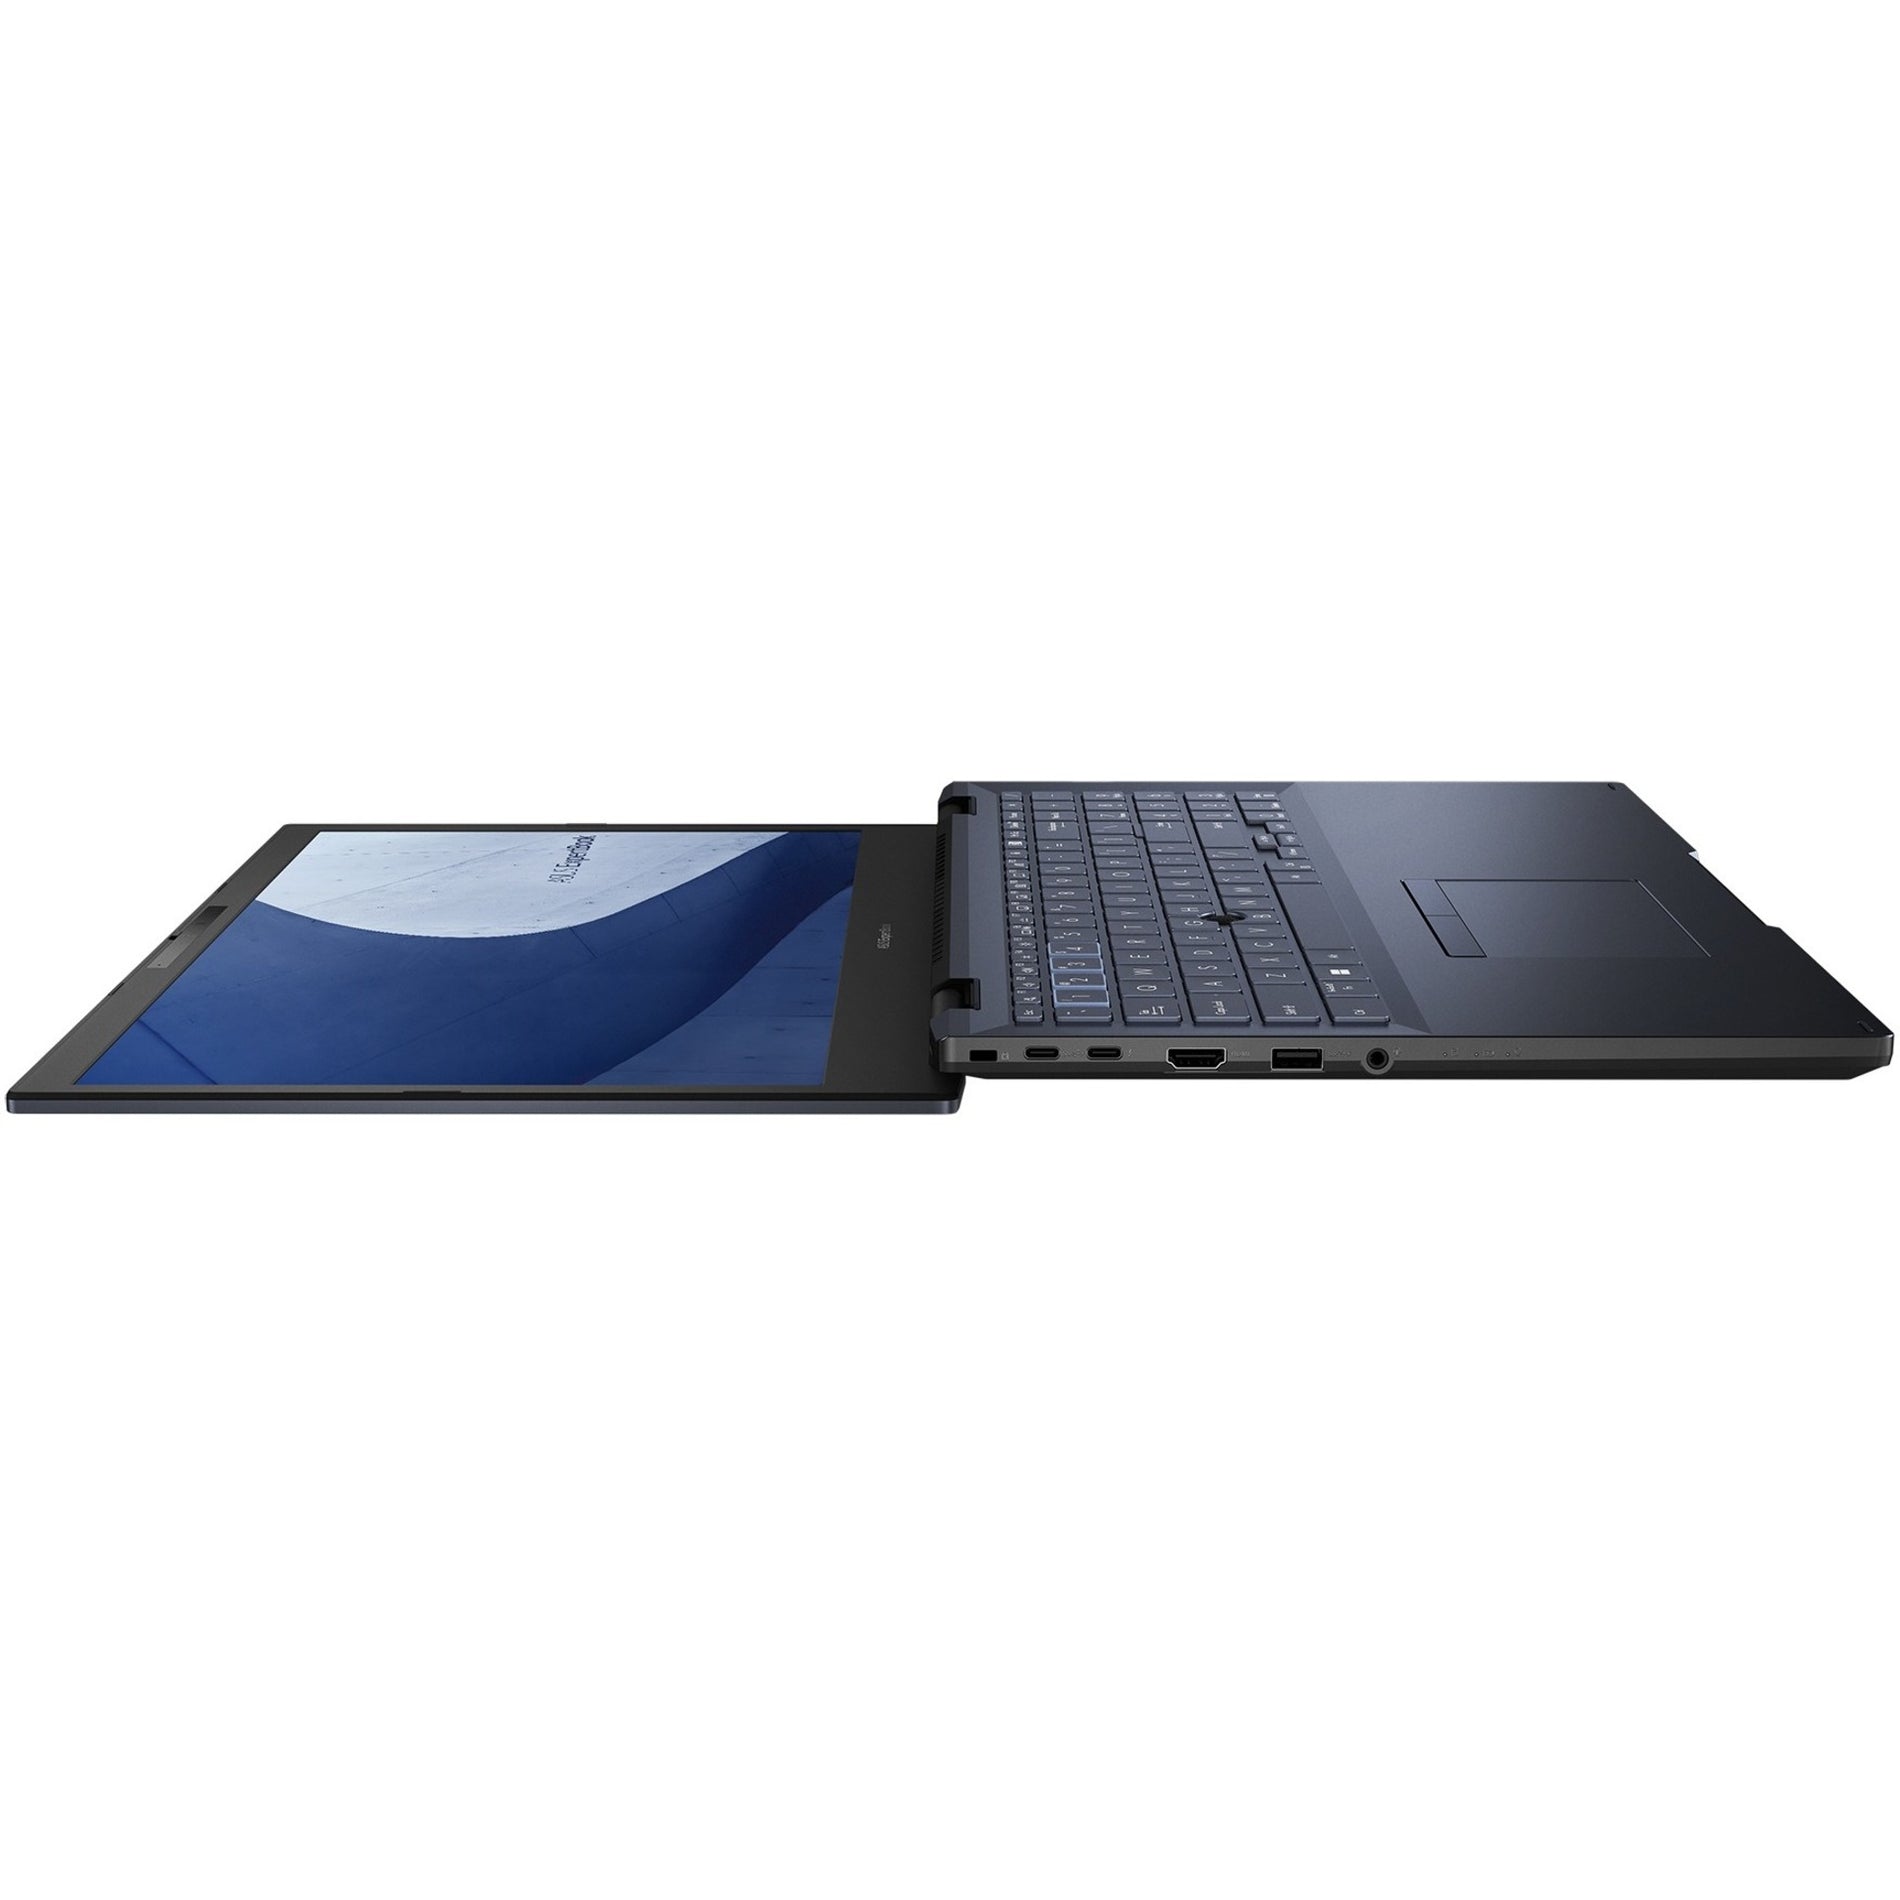 Asus B2502CVA-XS74 ExpertBook B2 15.6" Notebook, Core i7, 16GB RAM, 512GB SSD, Windows 11 Pro